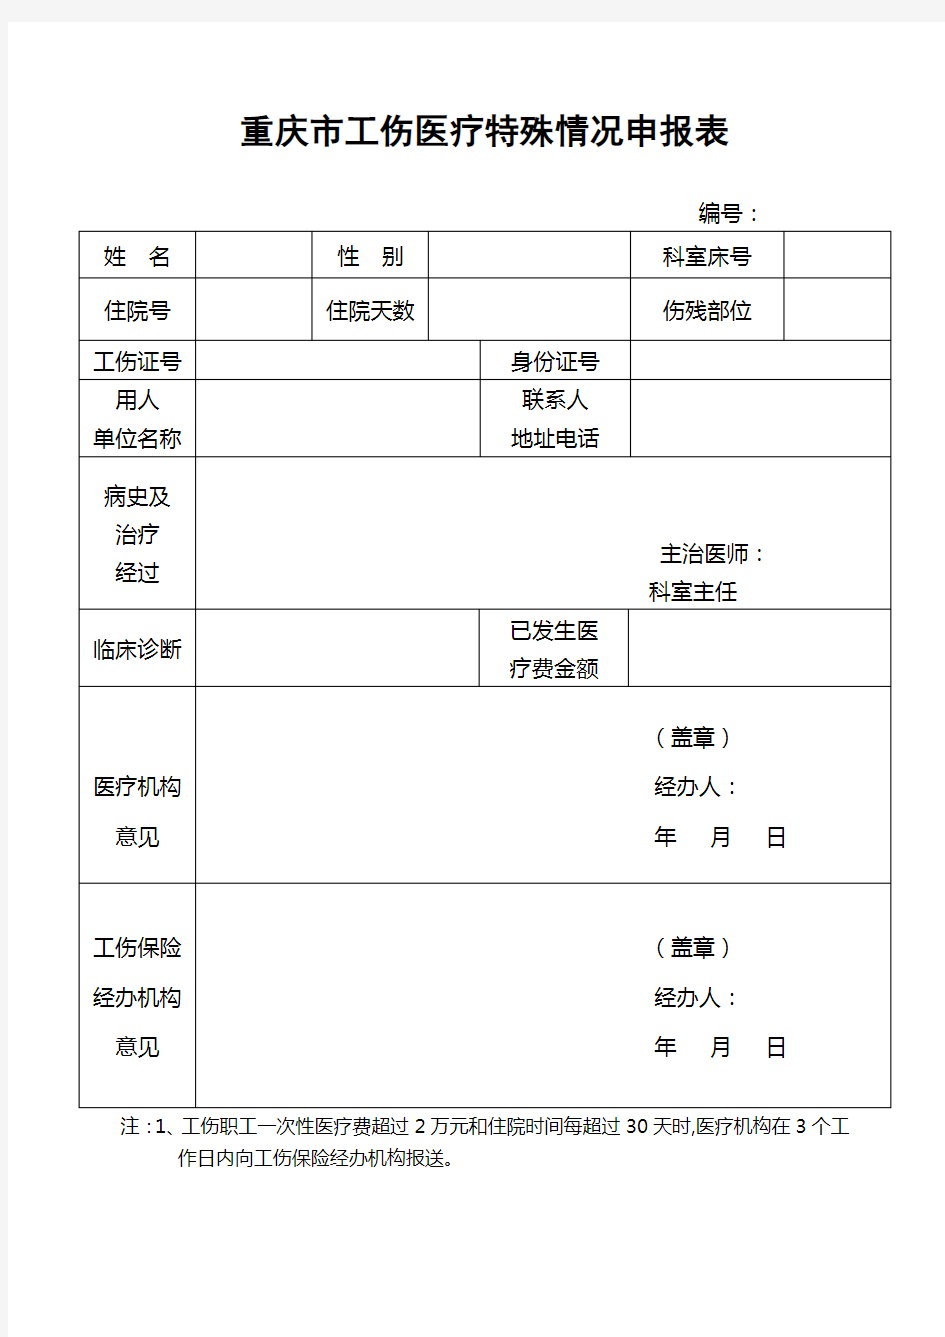 重庆市工伤事故伤害报告表